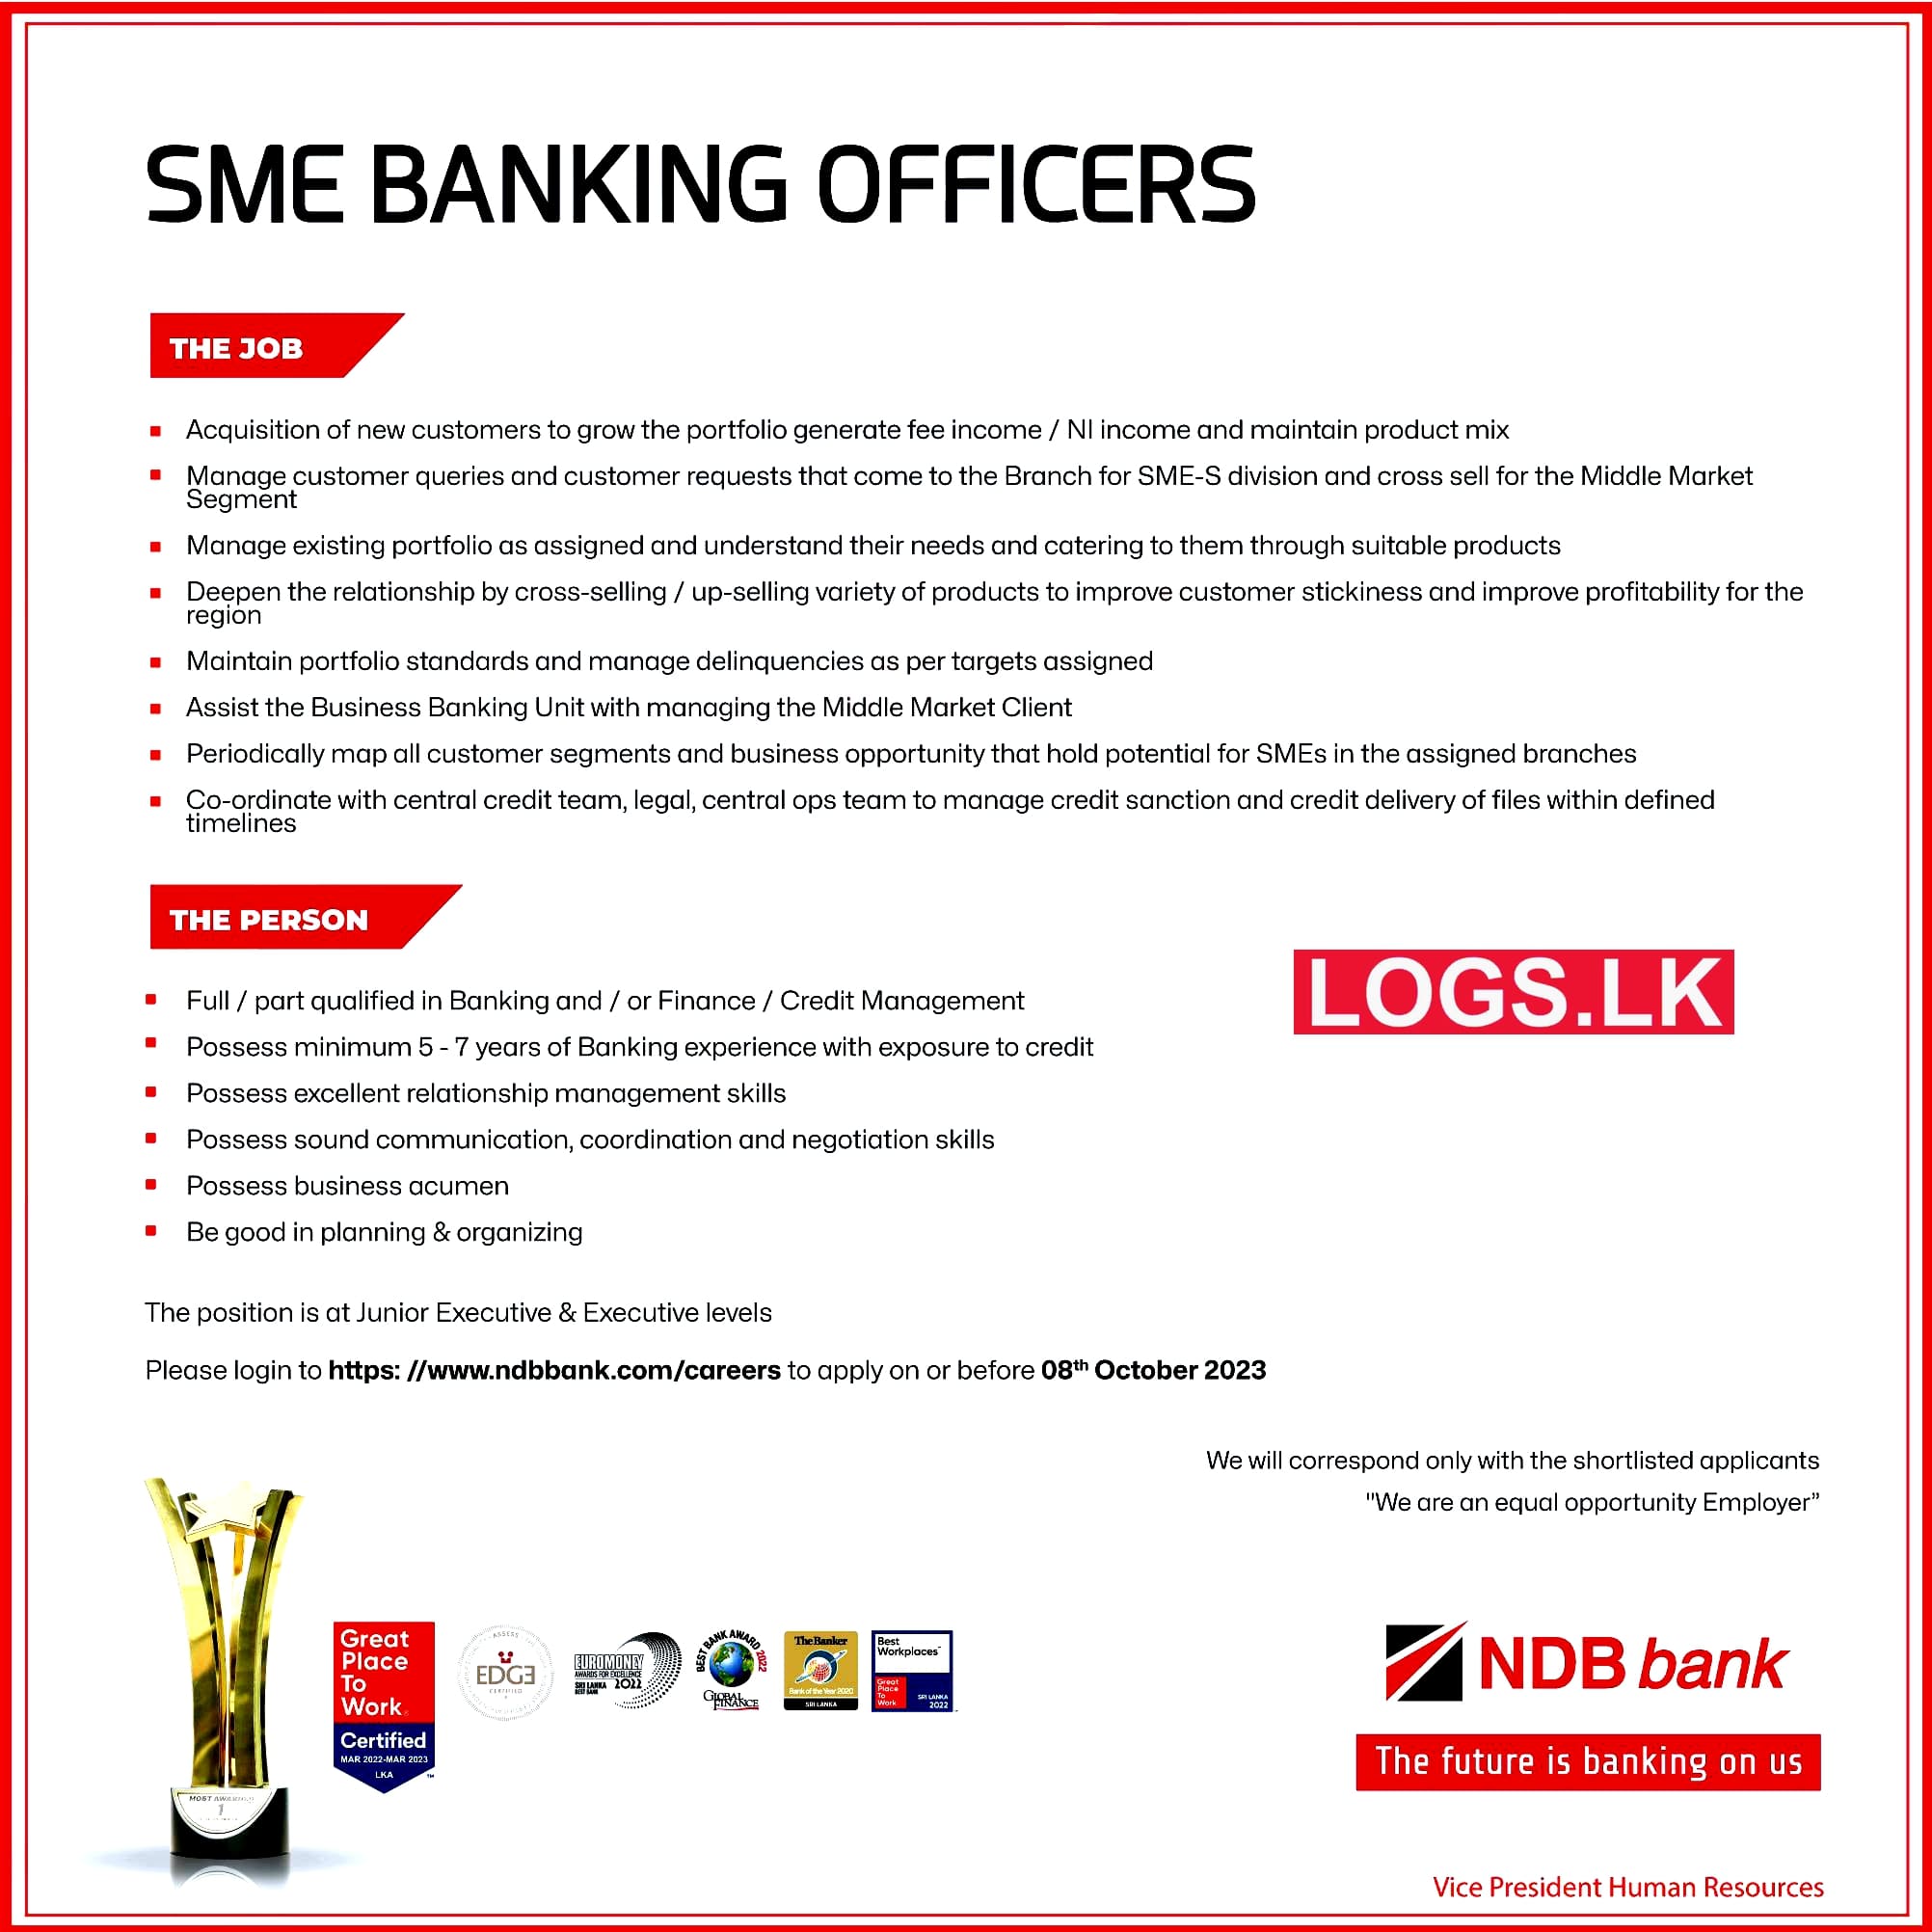 SME Banking Officers Vacancies NDB National Development Bank Job Vacancies in Sri Lanka